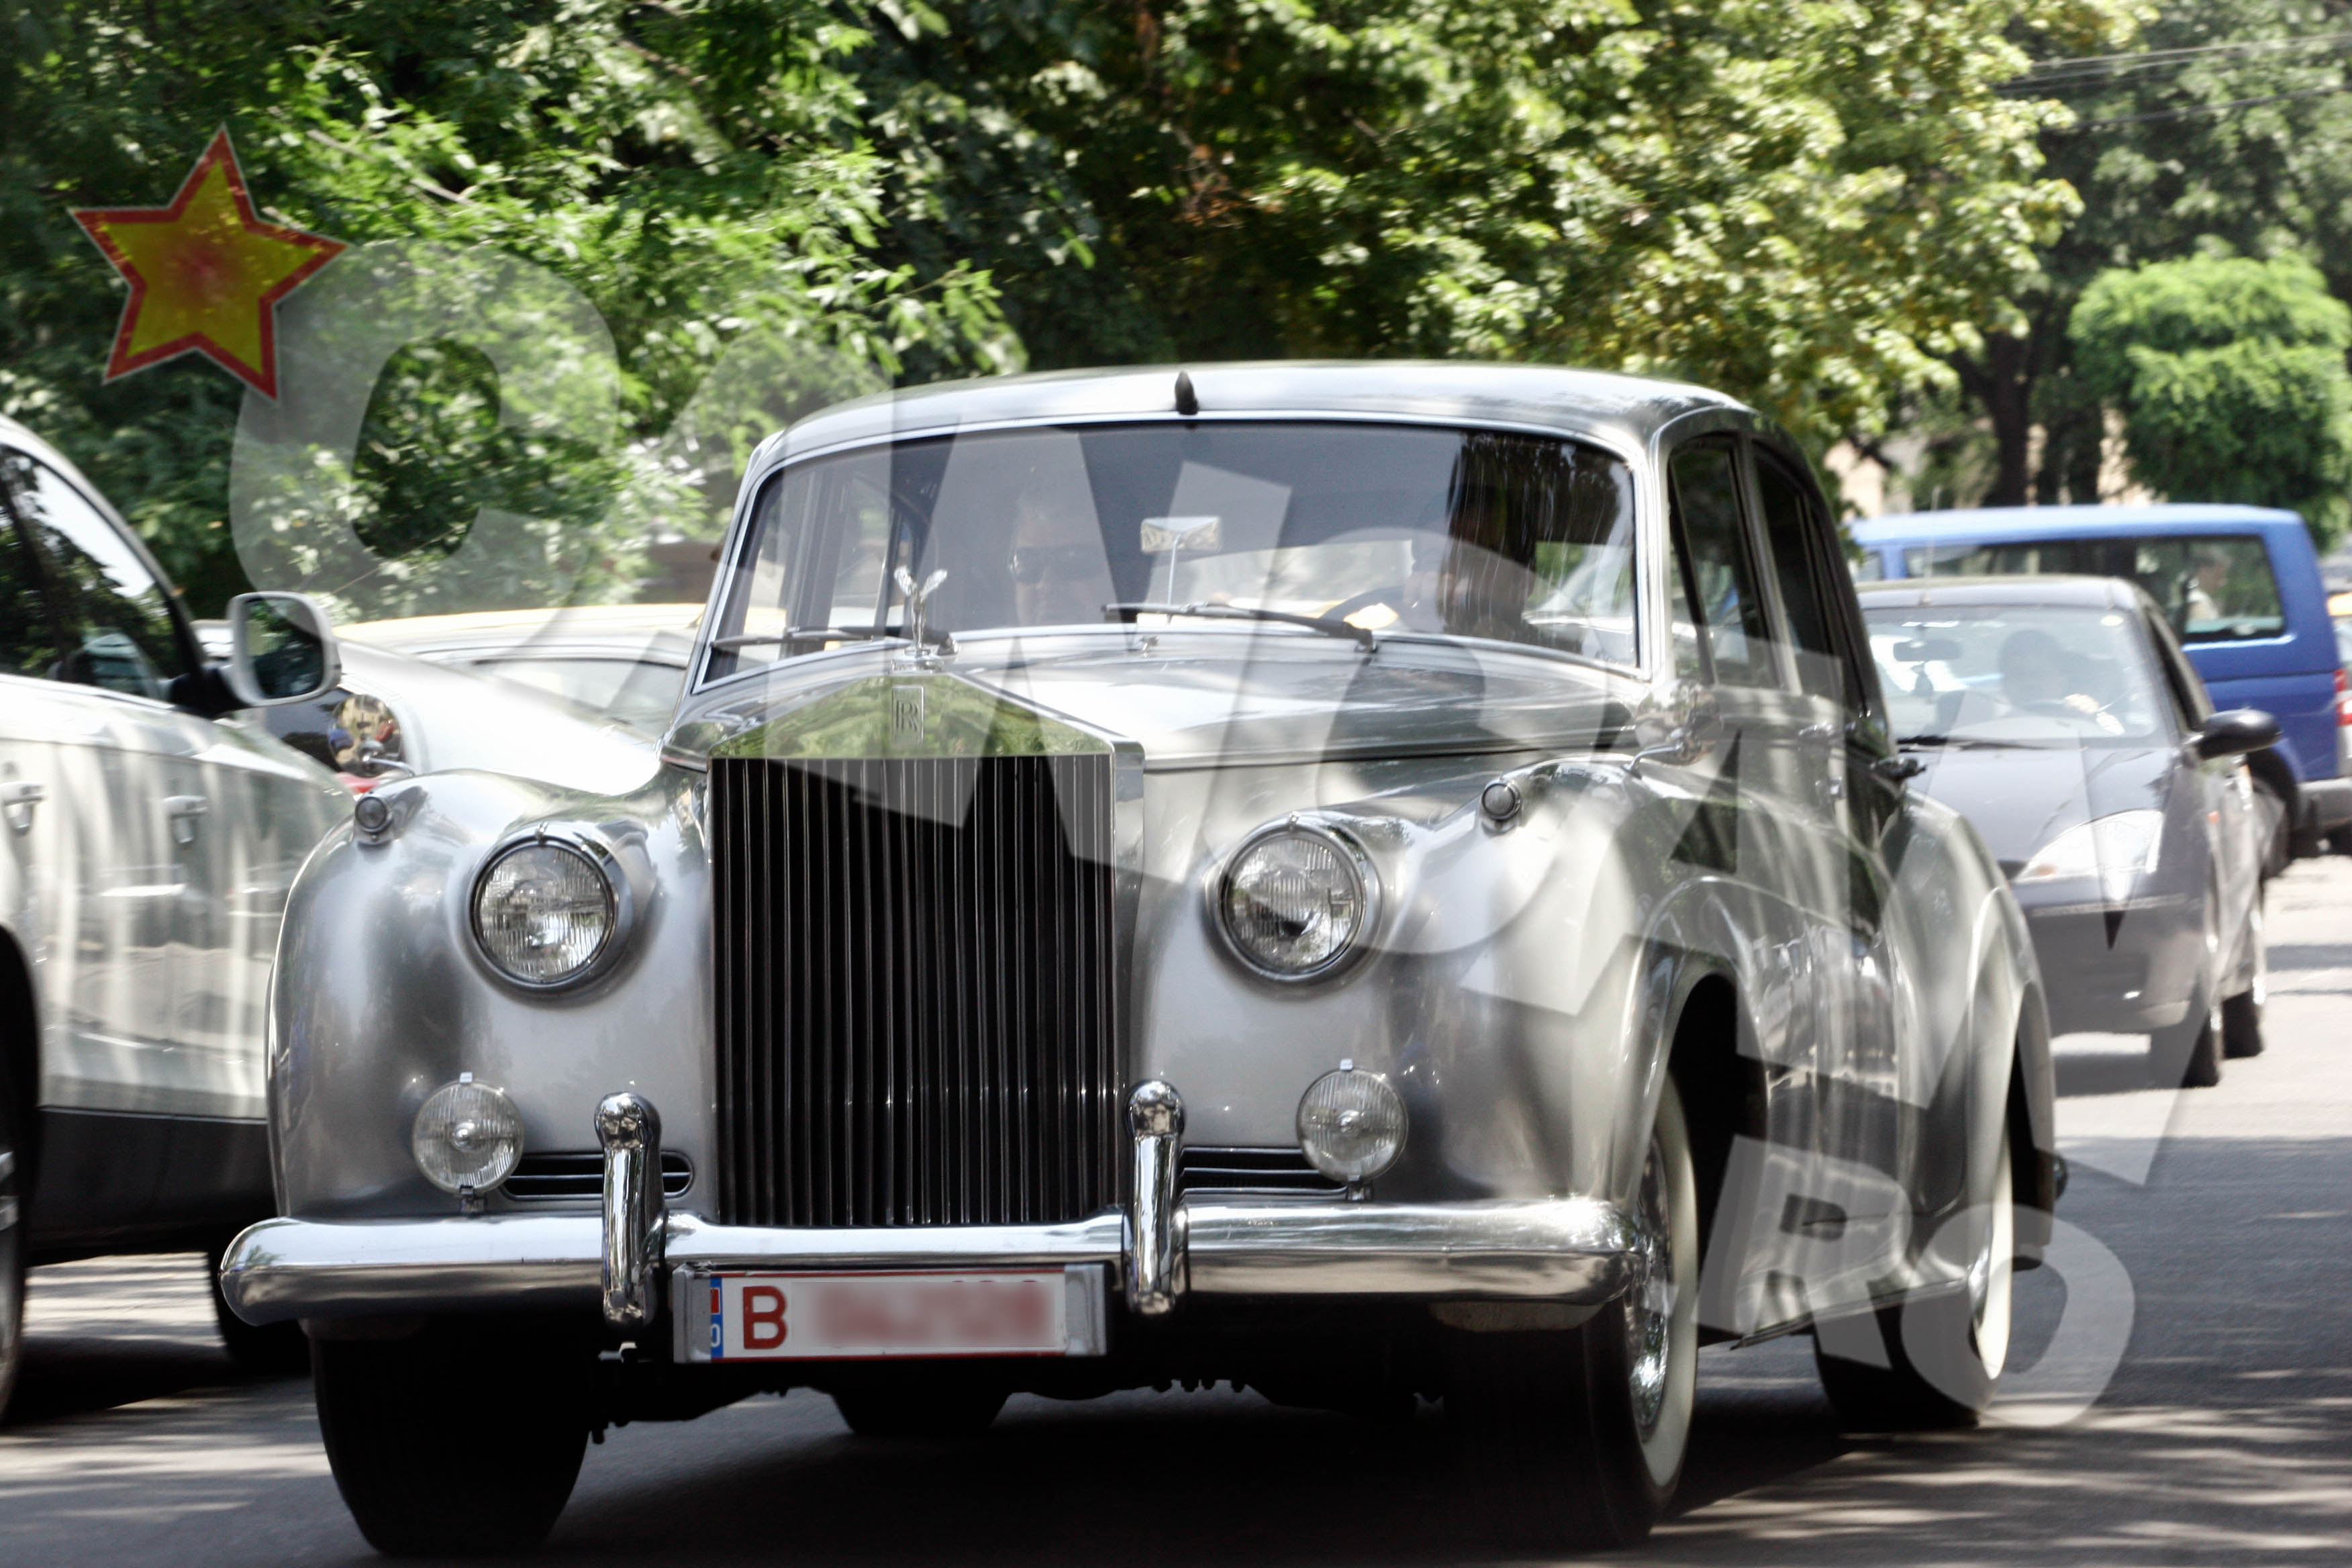 Milionarul are in garaj un Rolls-Royce de colectie